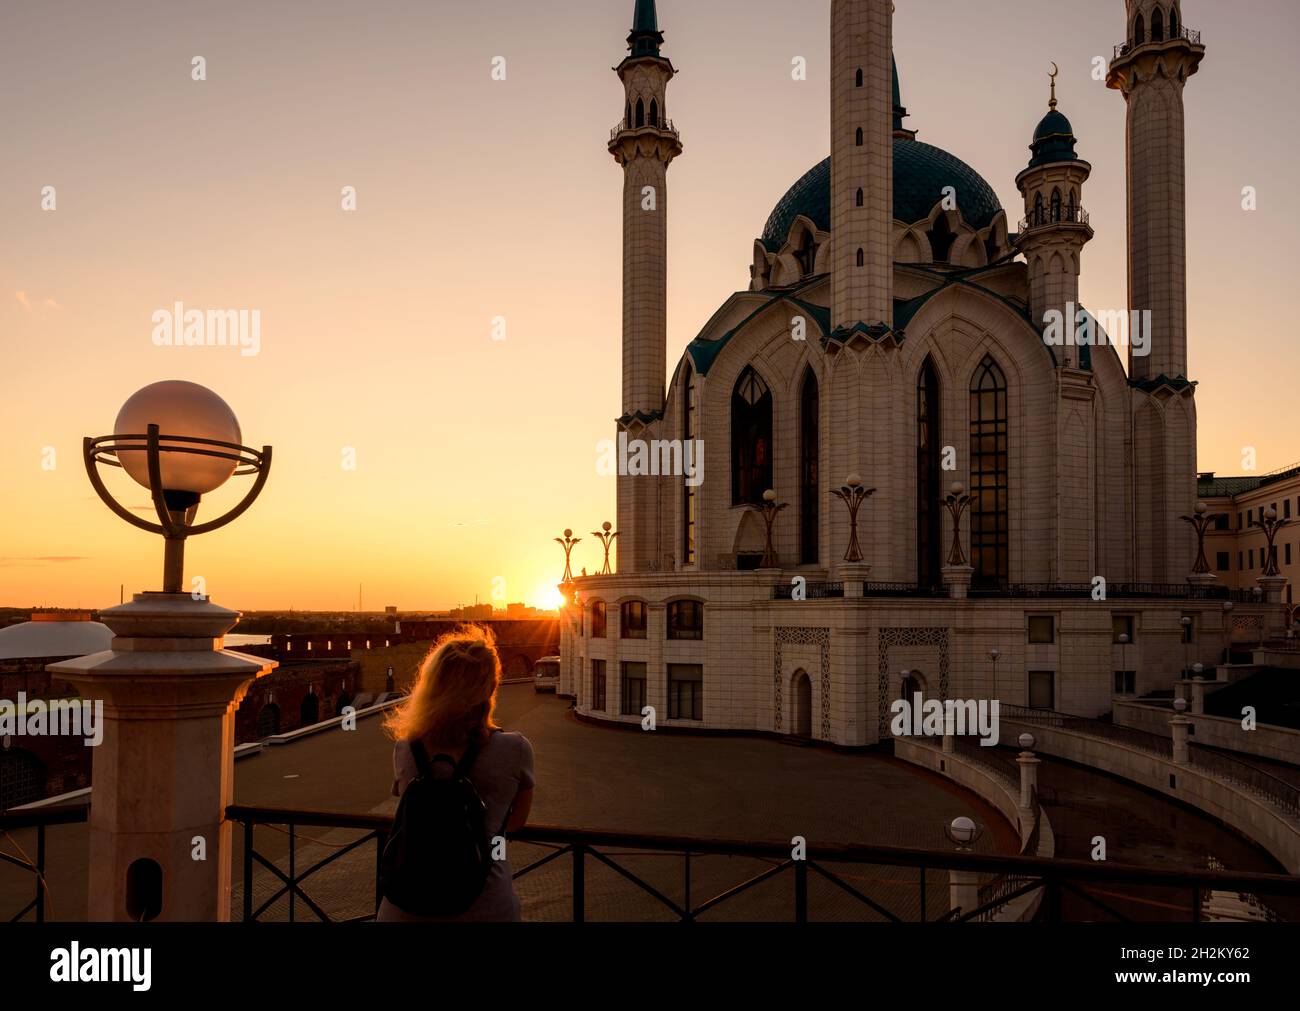 Kasan Kreml bei Sonnenuntergang, Tatarstan, Russland. Abendansicht der Kul Sharif Moschee, Wahrzeichen von Kazan. Mädchen schaut auf Touristenattraktion in Kazan City Cente Stockfoto